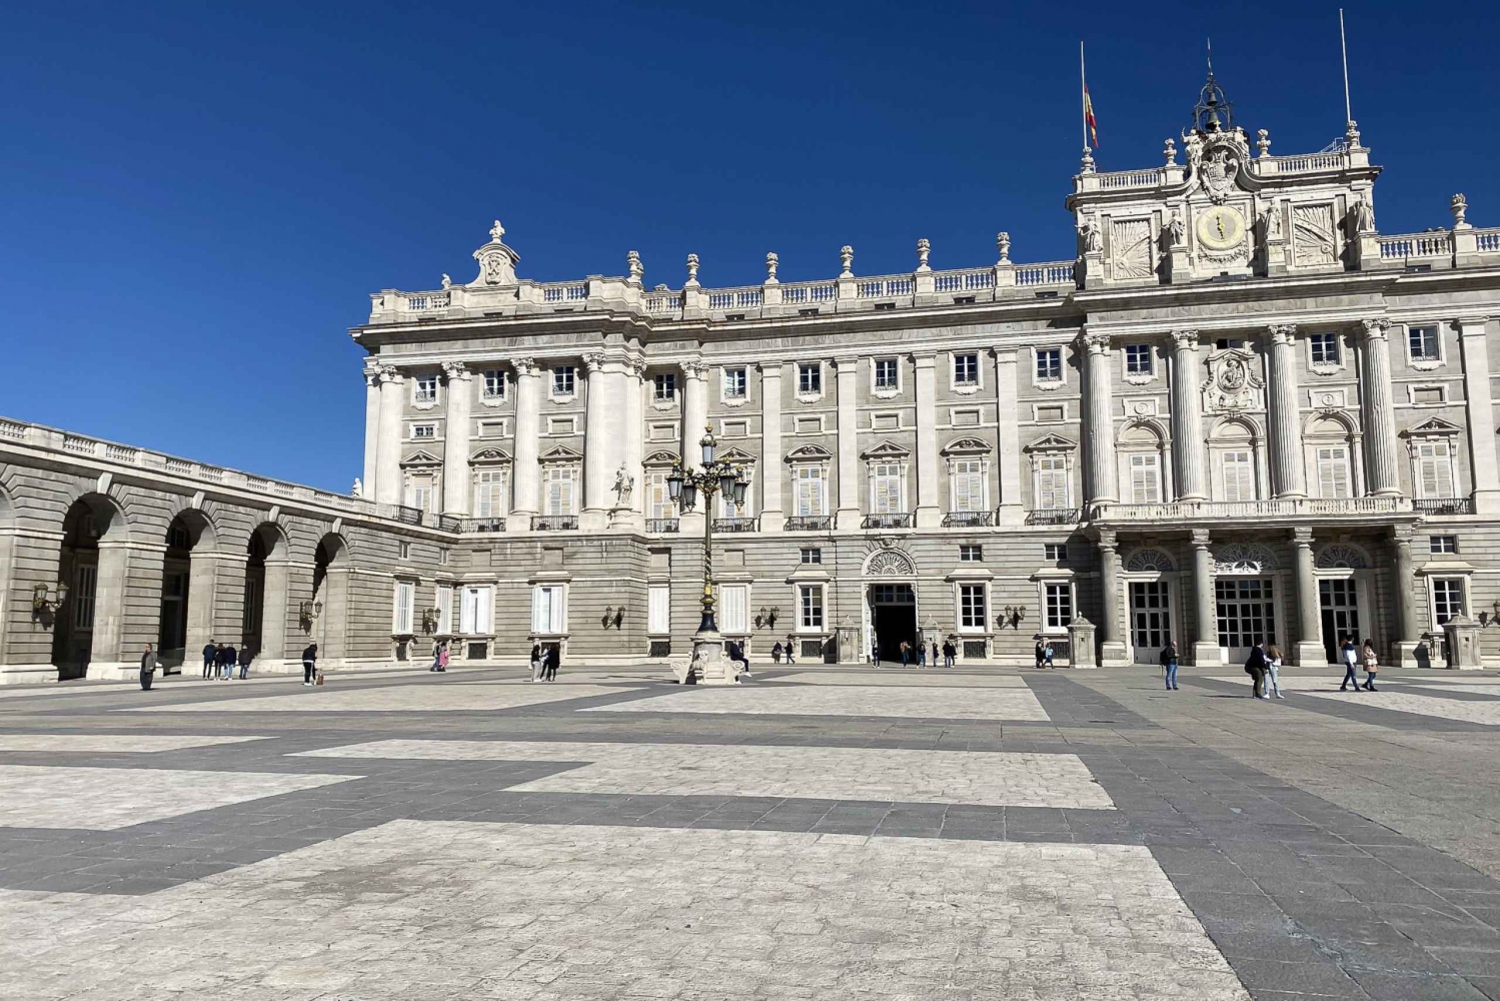 MADRID: Visita guiada ao Palácio Real com ingressos